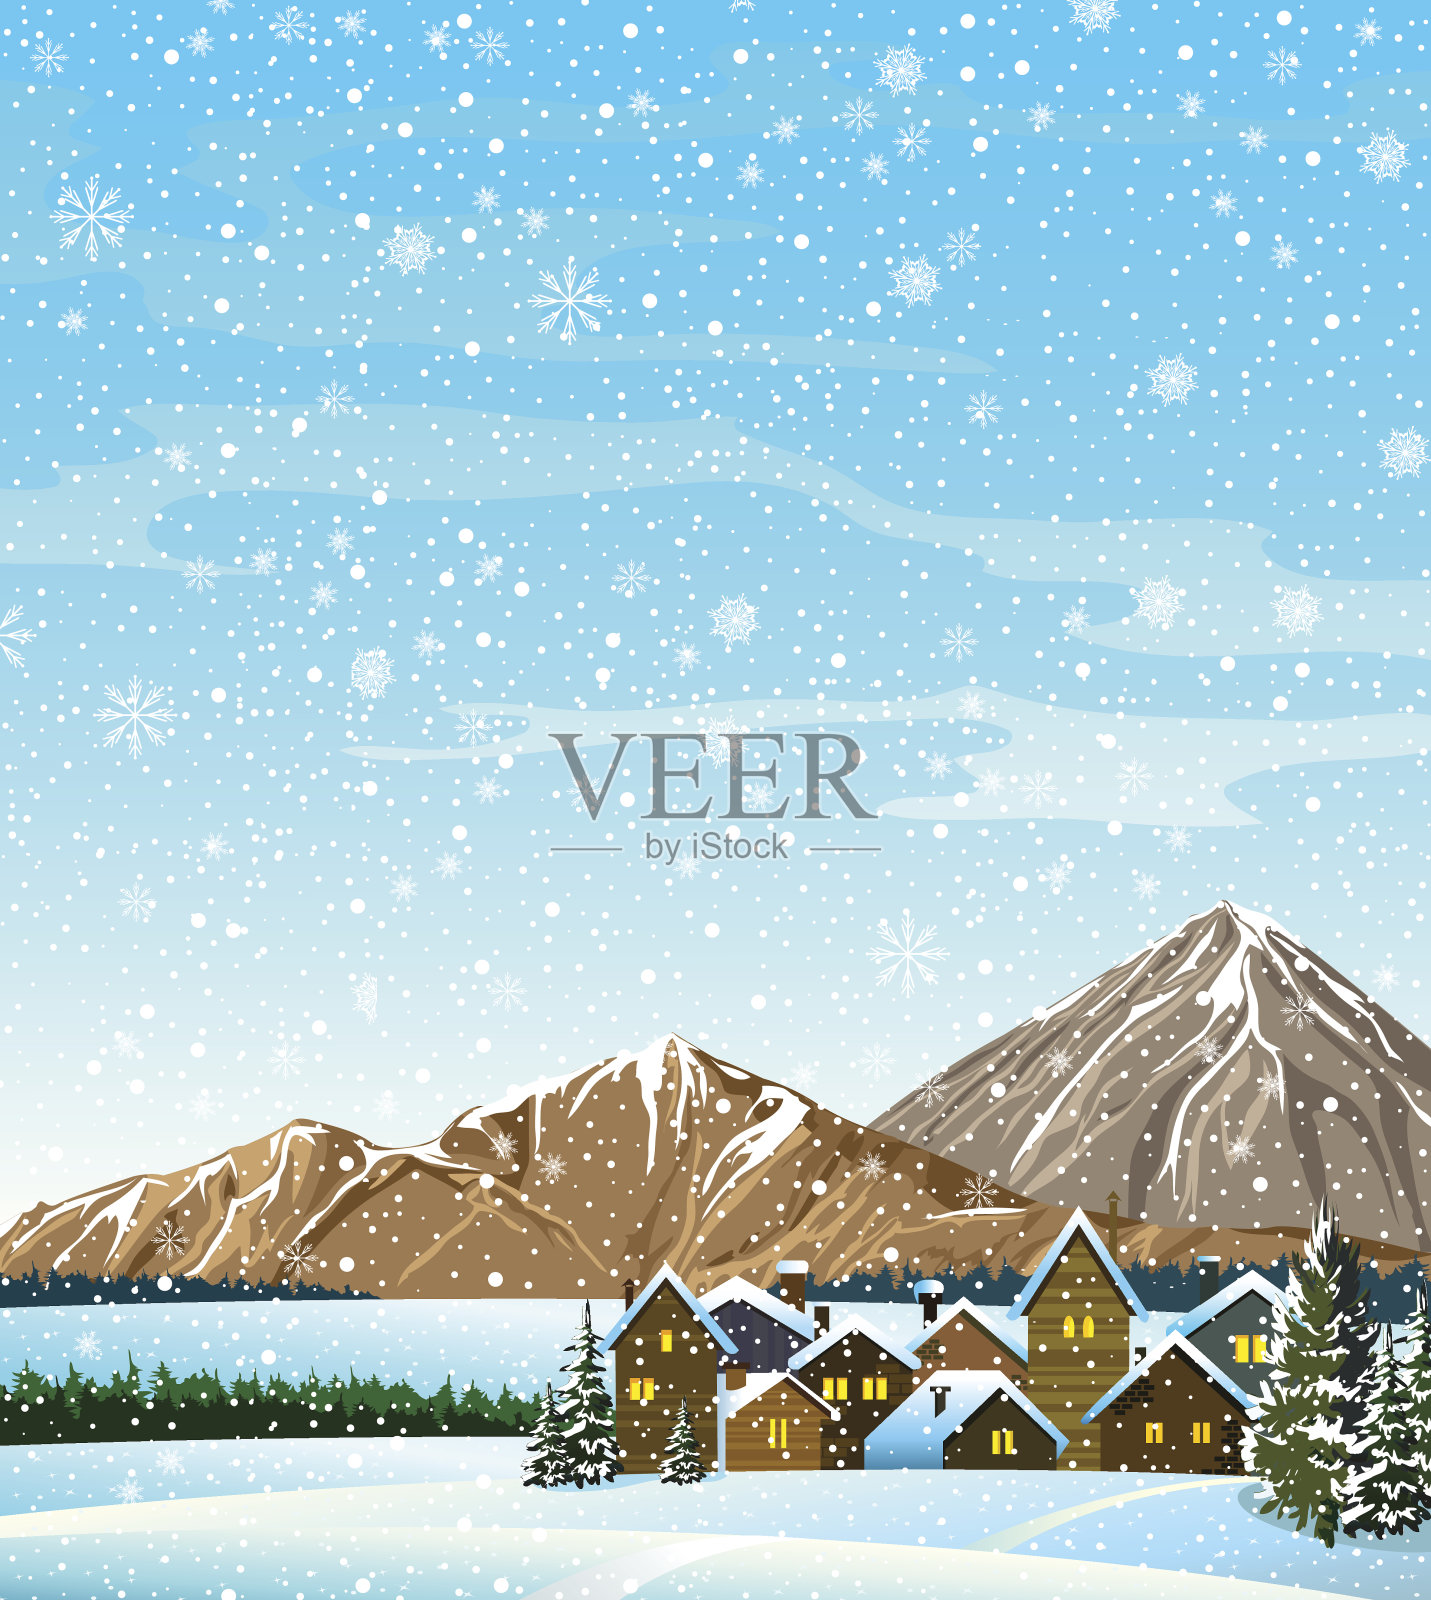 有房子和山脉的冬季景观插画图片素材